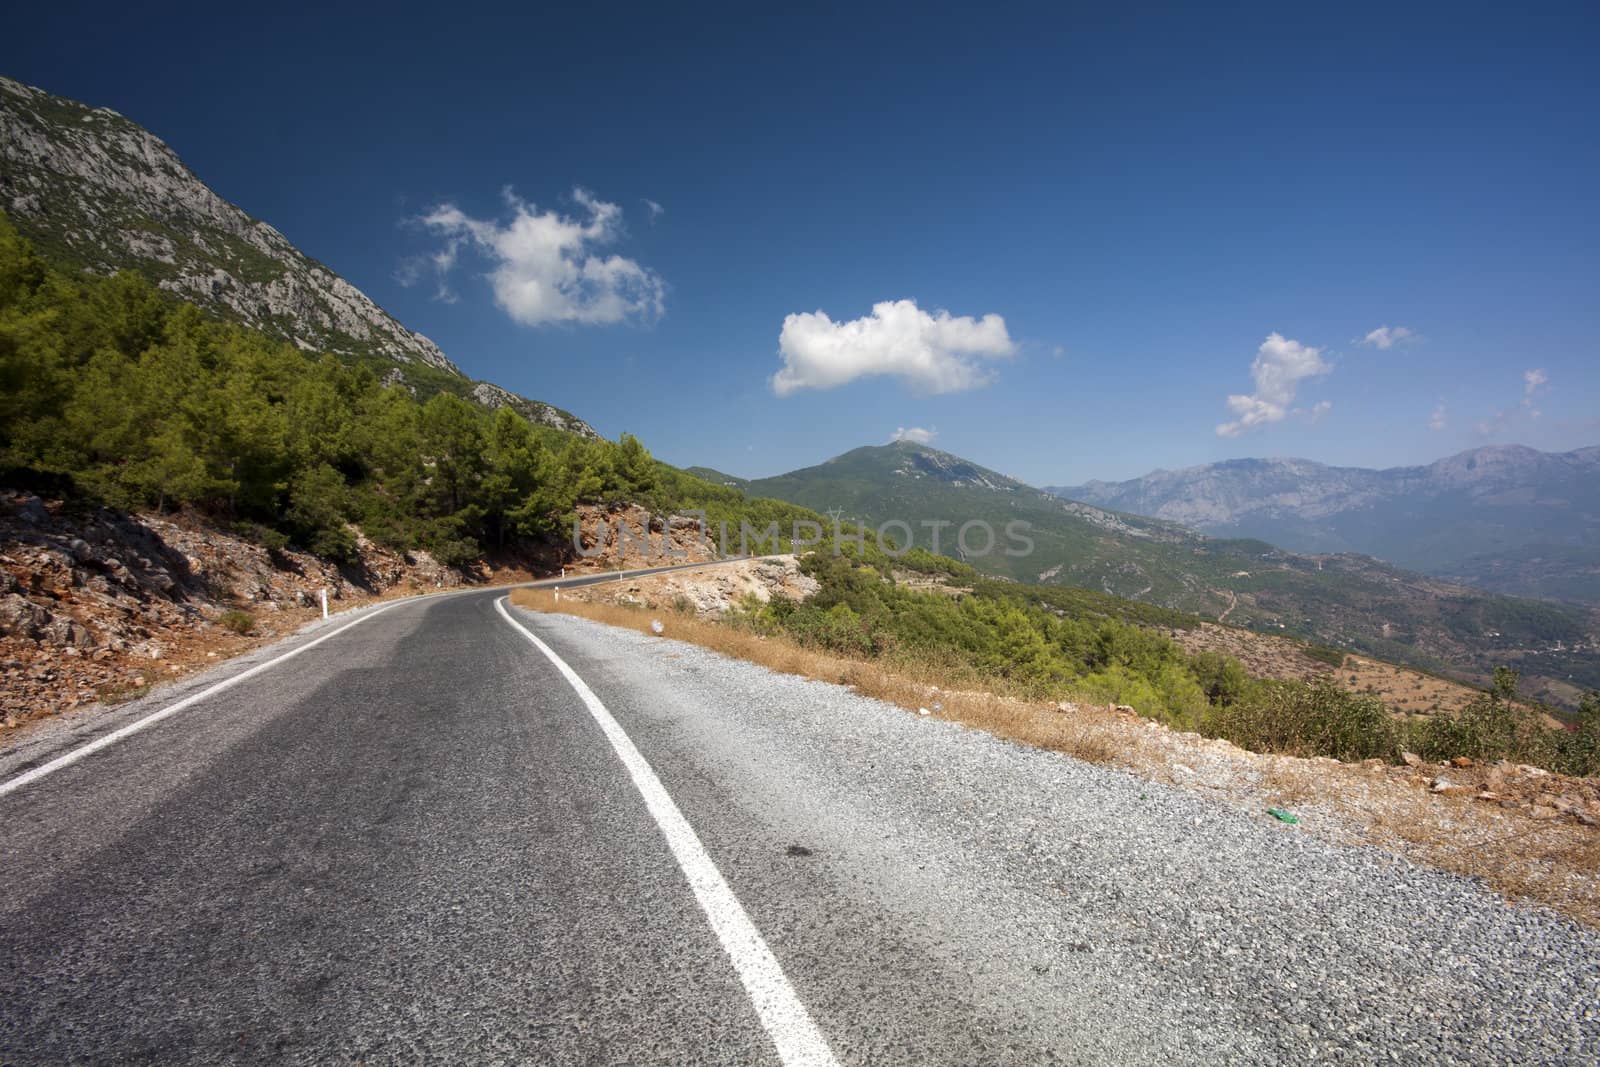 Mountain Road, Taurus(Toros) Mountains, Turkey by khellon